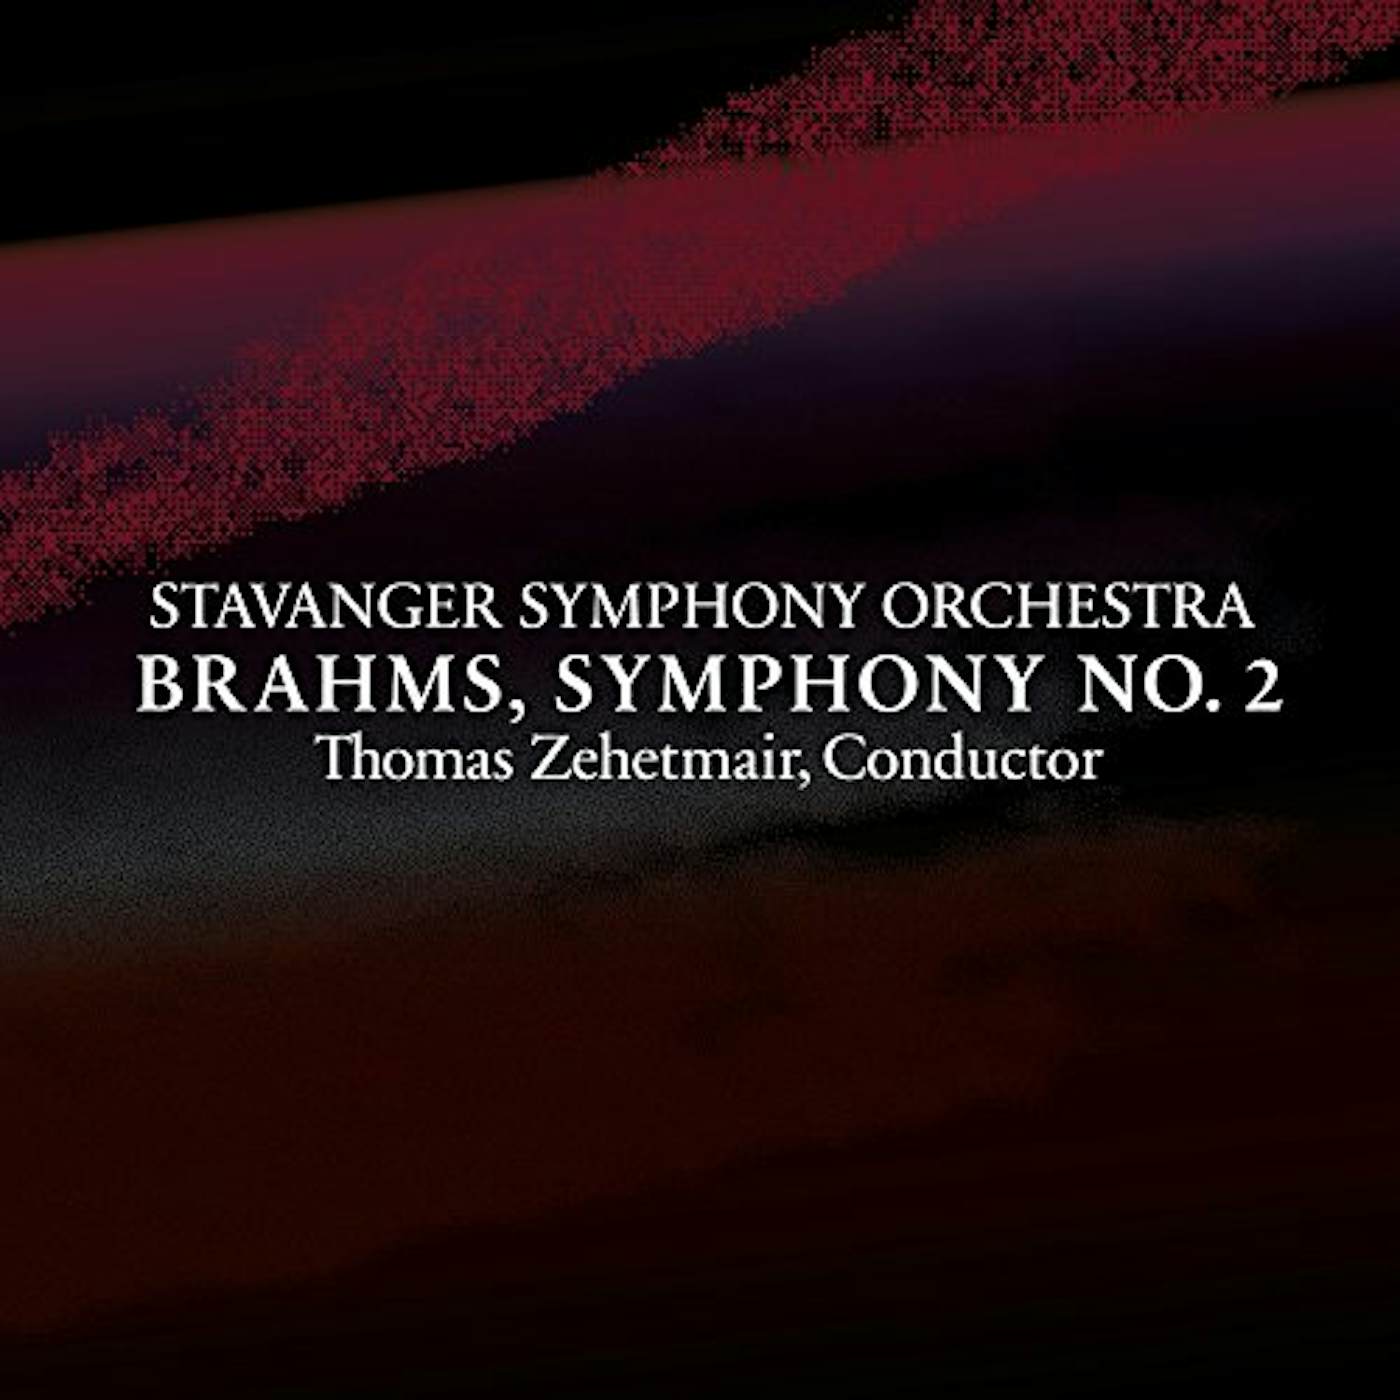 Stavanger Symphony Orchestra BRAHMS SYMPHONY NO. 2 IN D MAJOR OP. 73 CD